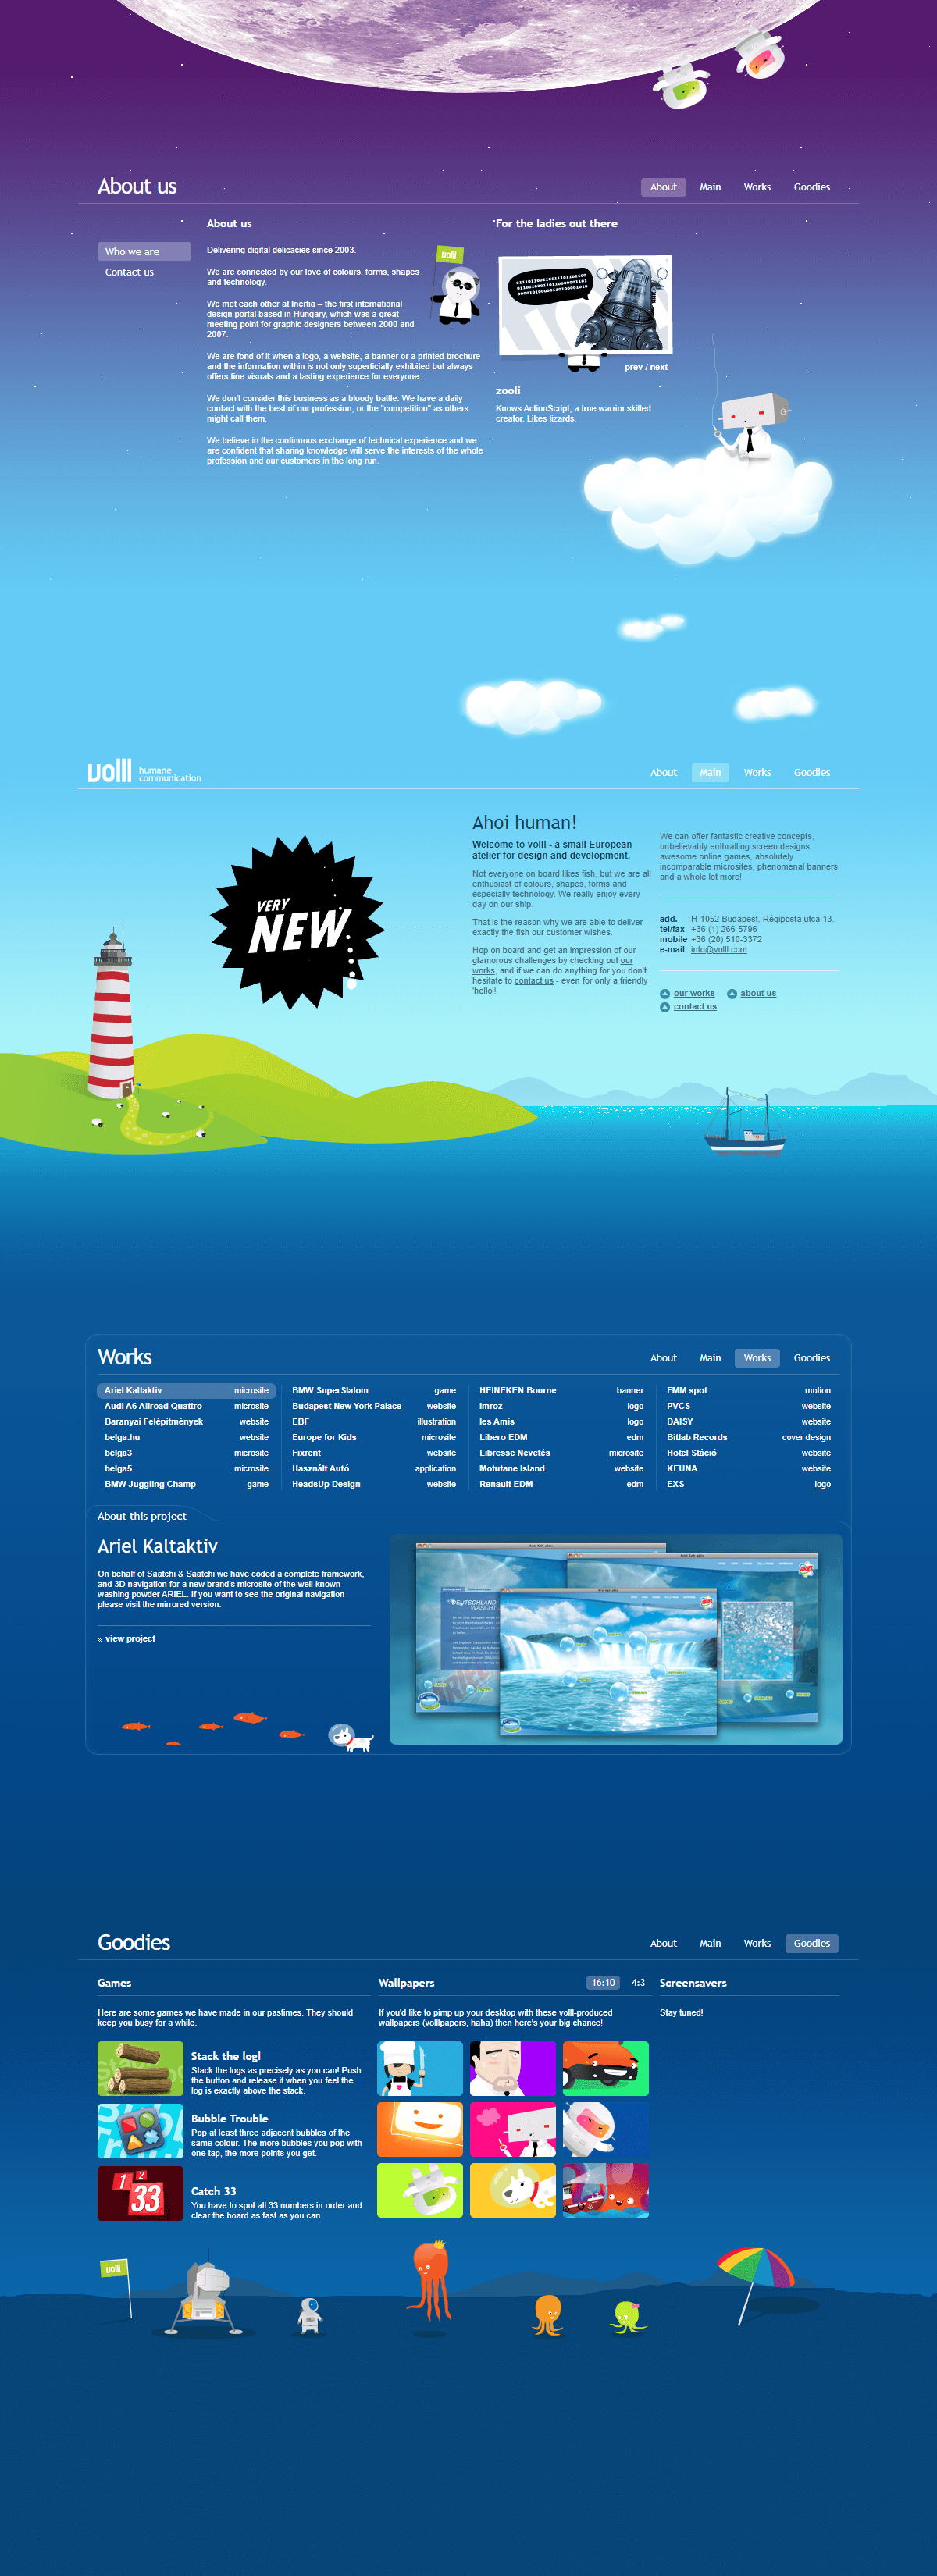 Volll website in 2007